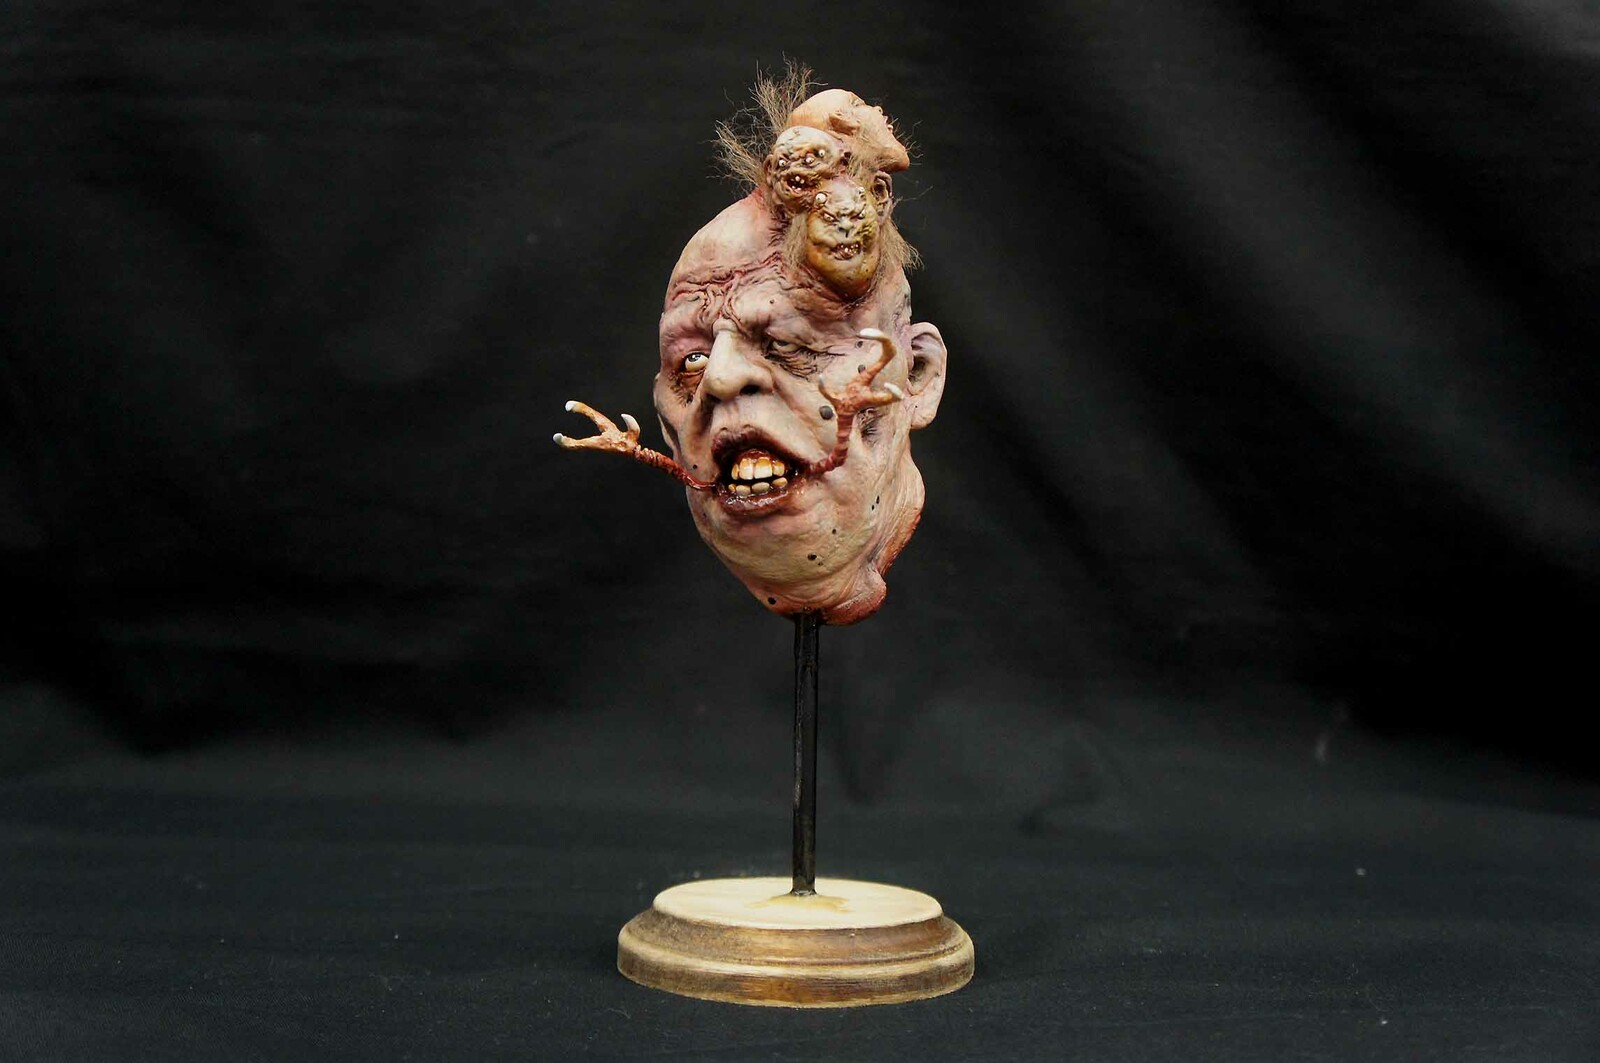 Voodoo Head Art Statue
https://www.solidart.club/